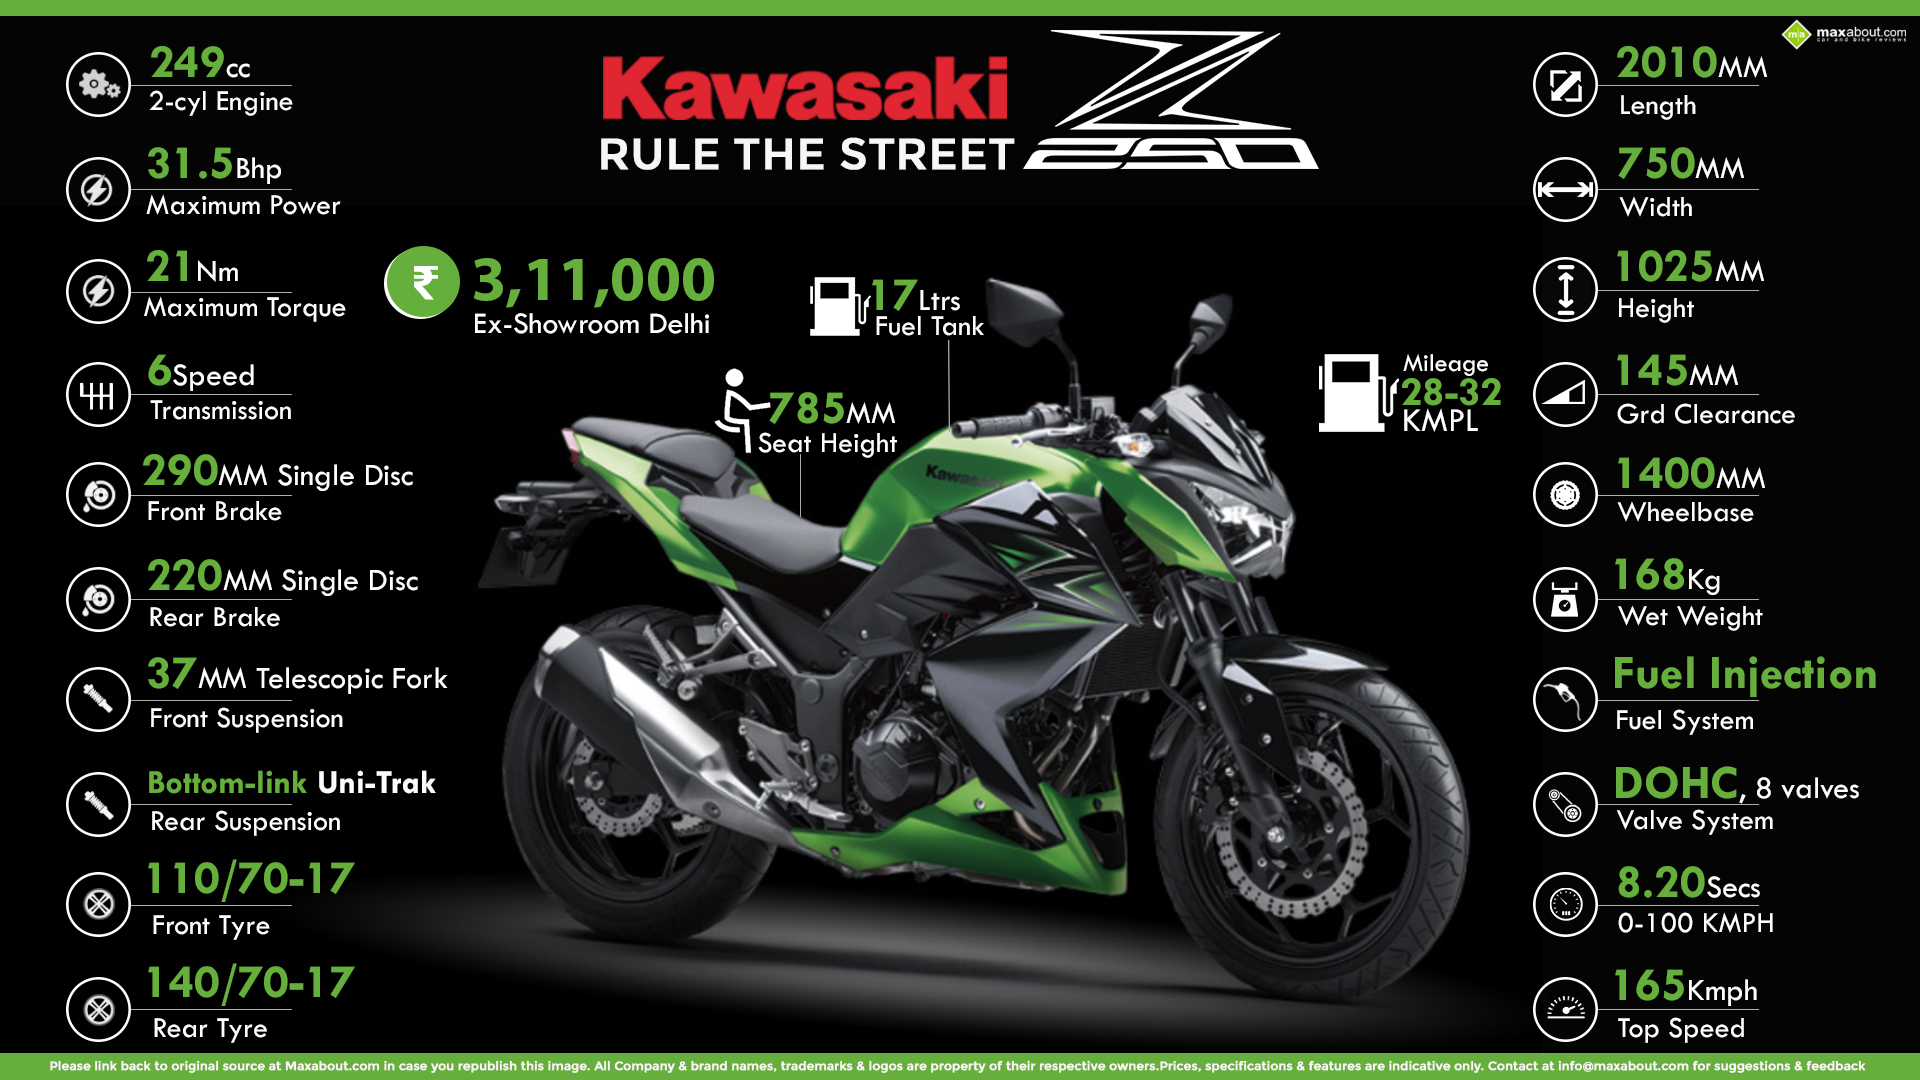 Quick Facts About Kawasaki